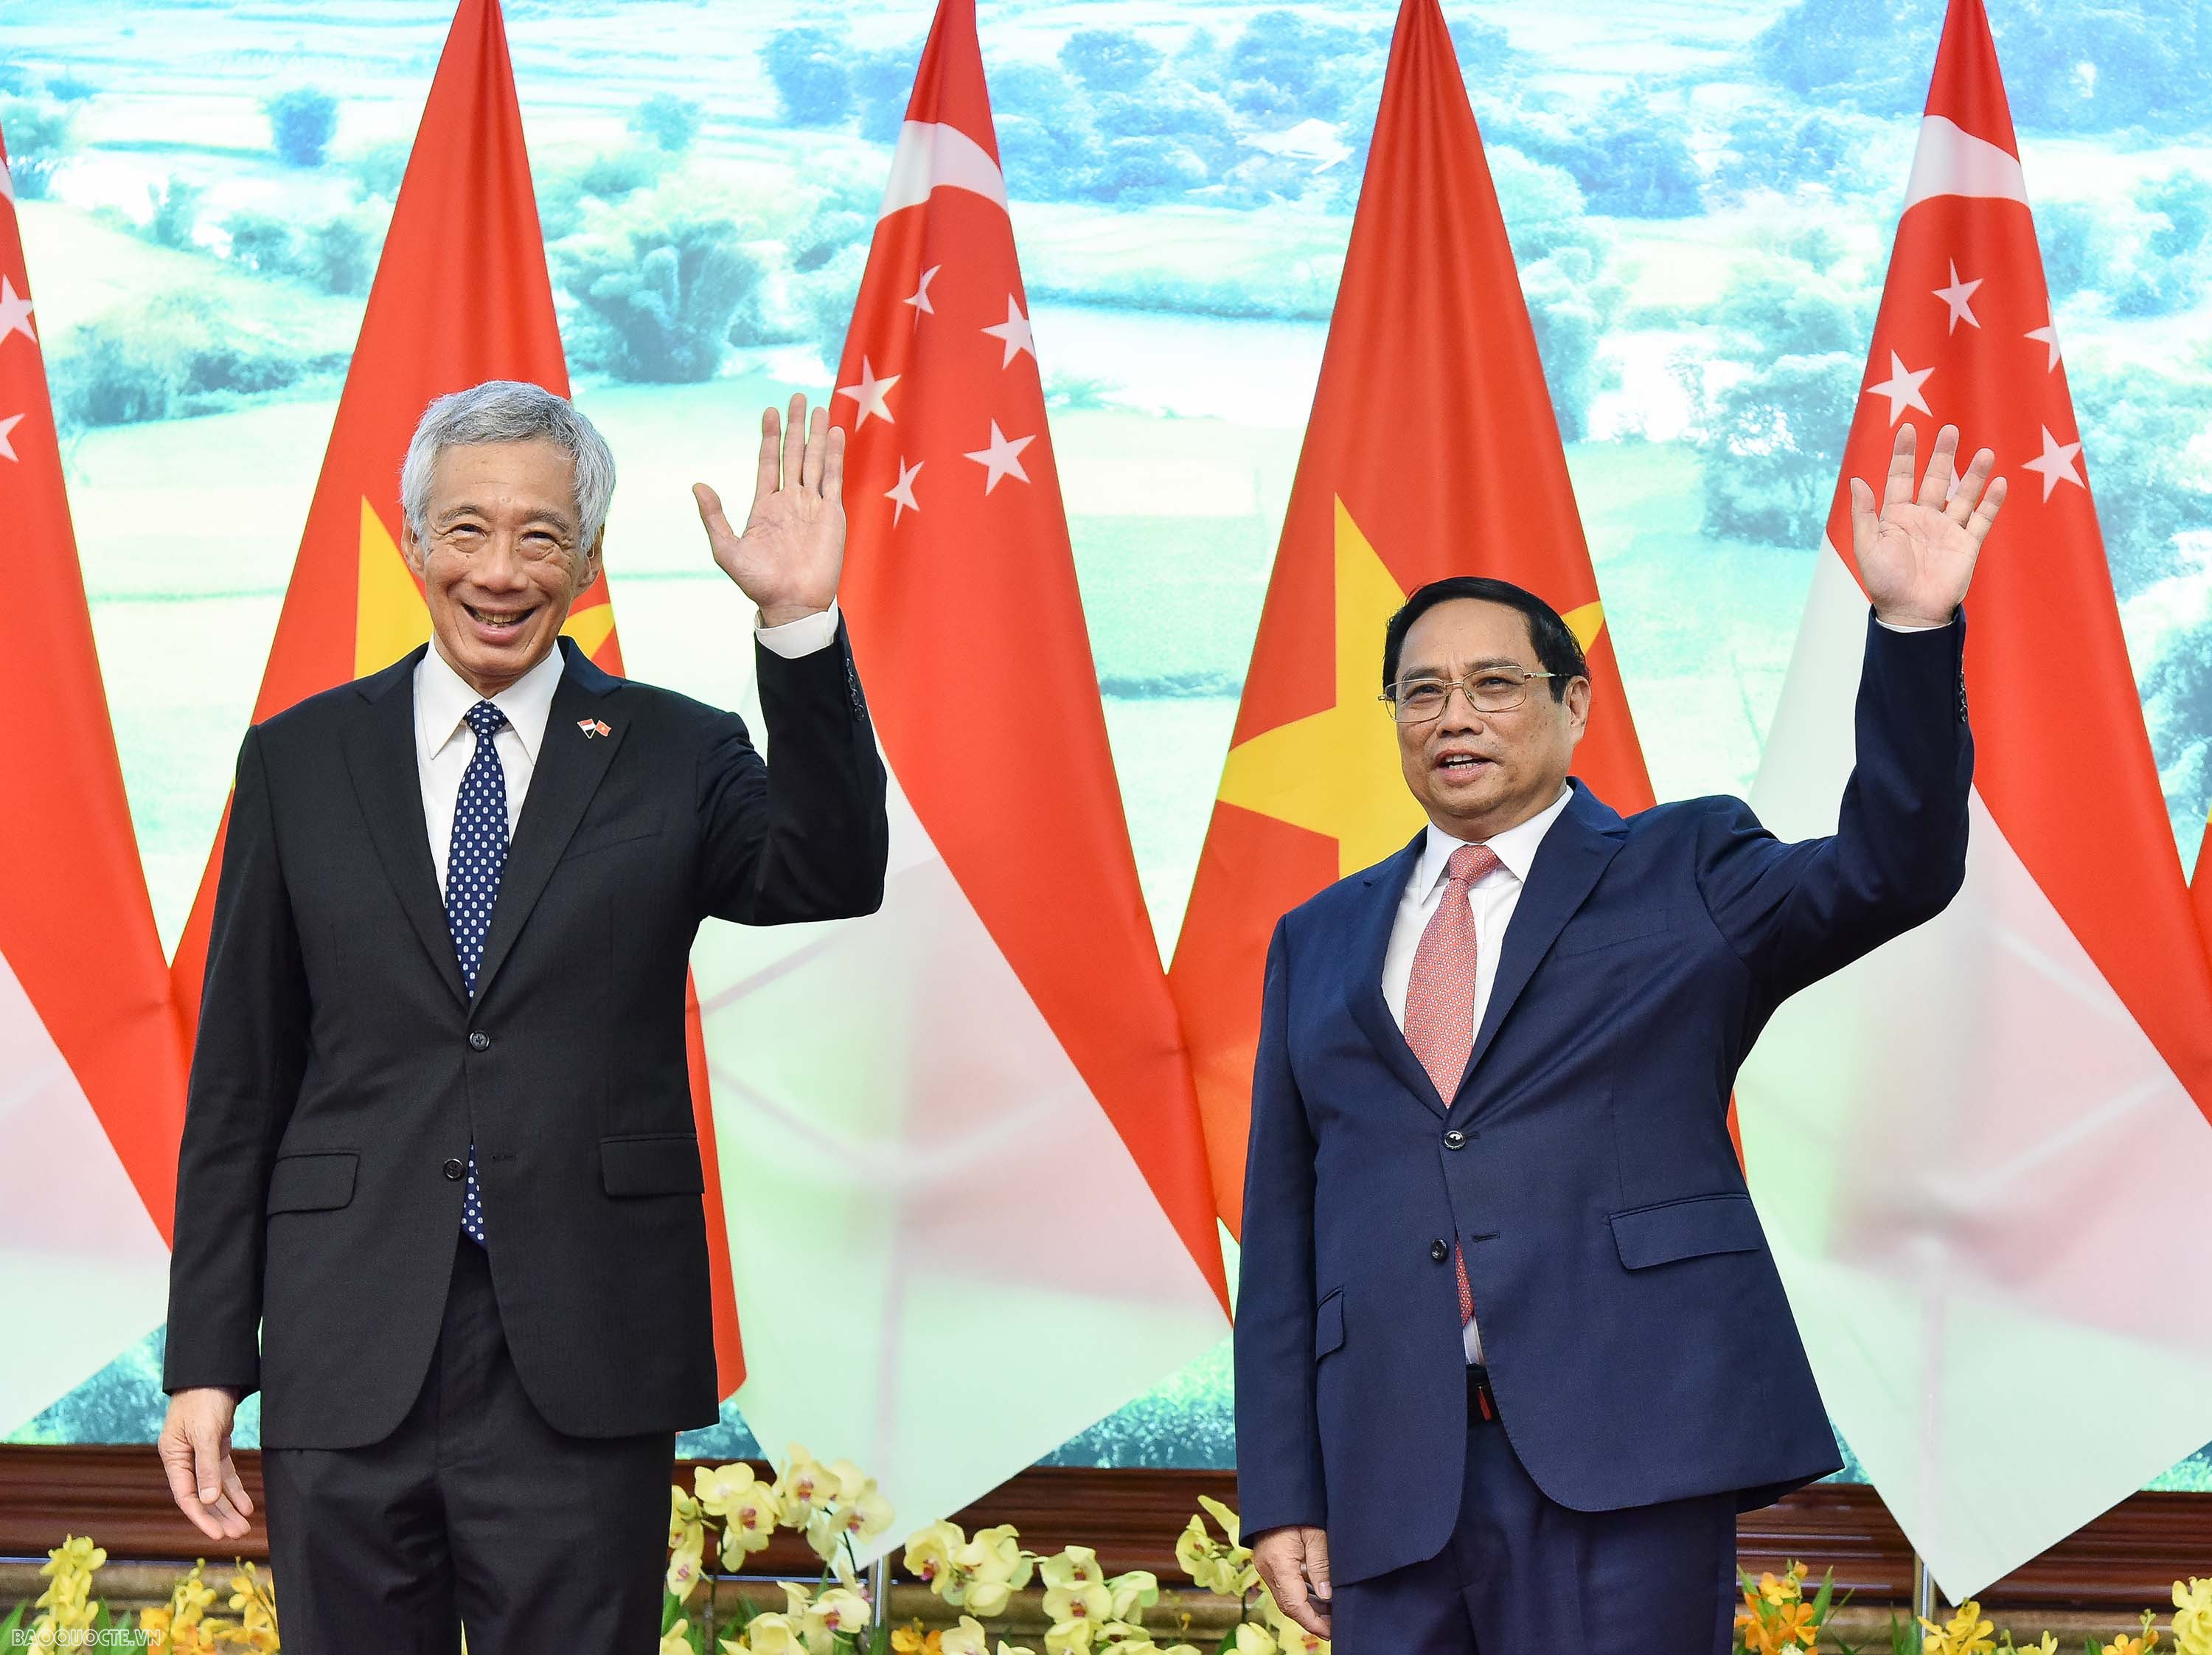 Ngày cuối cùng trong chuyến thăm Việt Nam, Thủ tướng Lý Hiển Long và Thủ tướng Phạm Minh Chính sẽ đồng chủ trì một loạt các hoạt động: Dự Hội nghị thúc đẩy triển khai thực hiện các dự án hợp tác đầu tư Việt Nam-Singapore; gặp gỡ các sinh viên tiêu biểu và